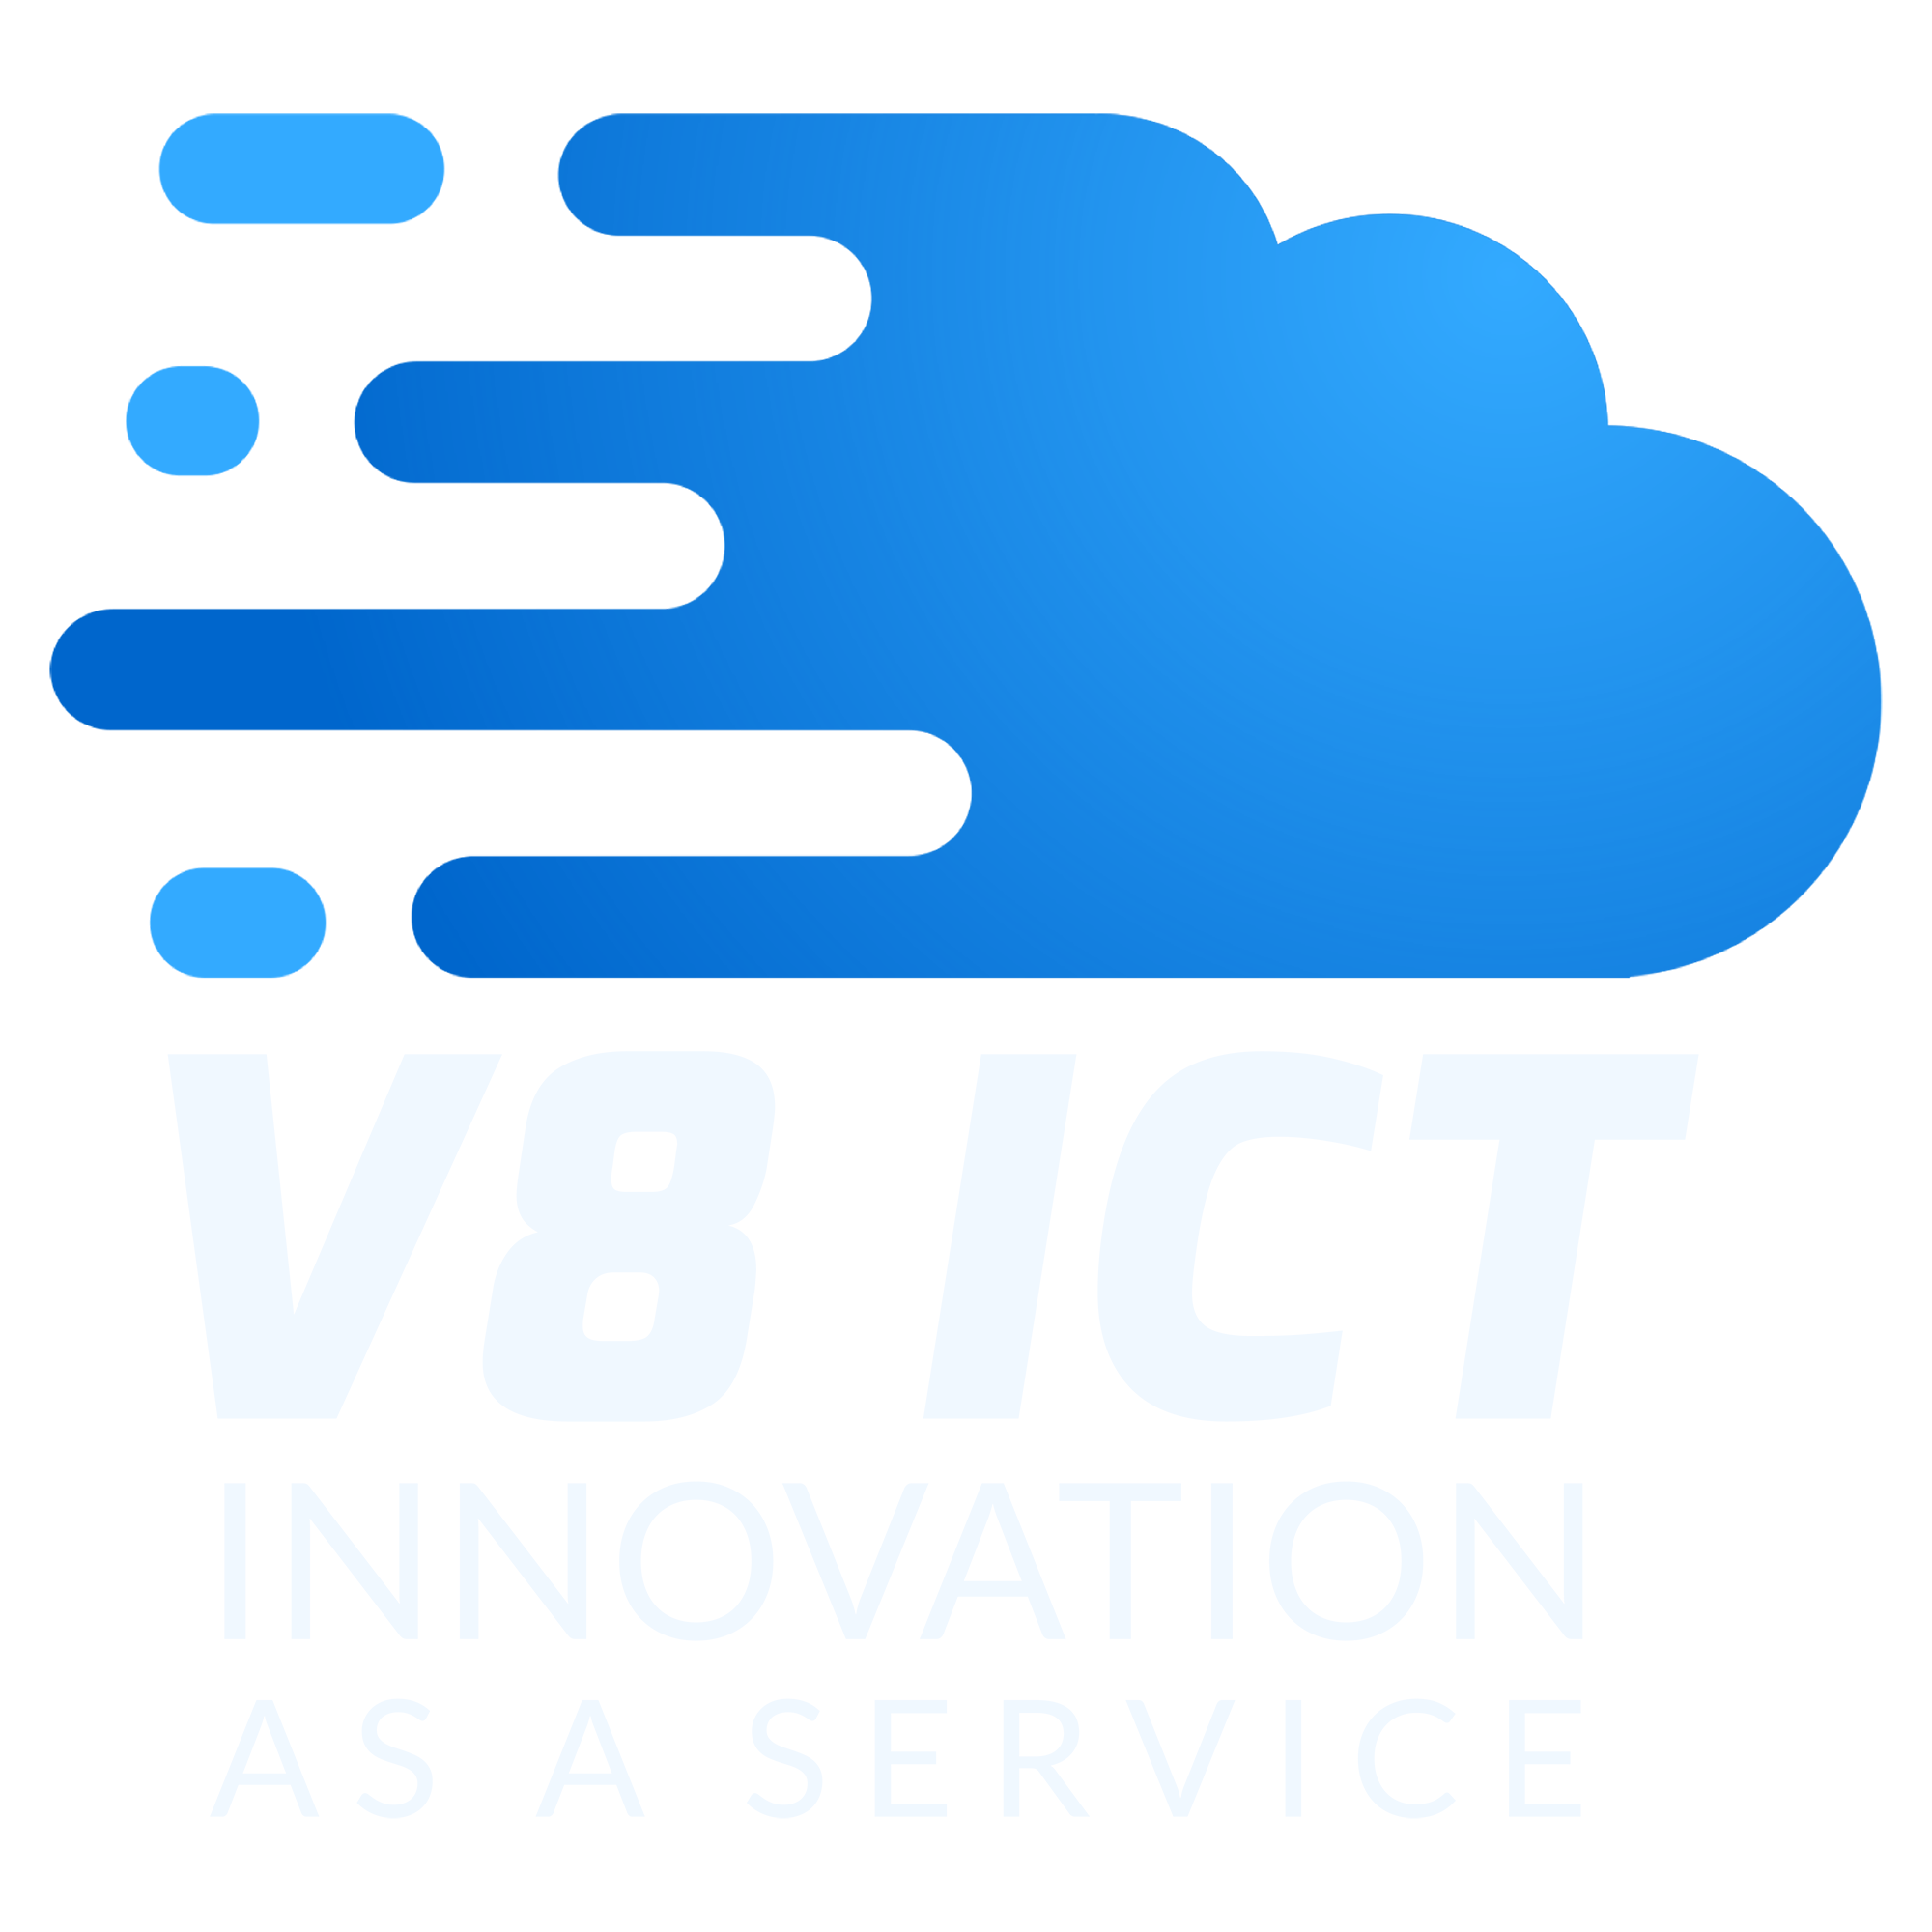 V8 ICT